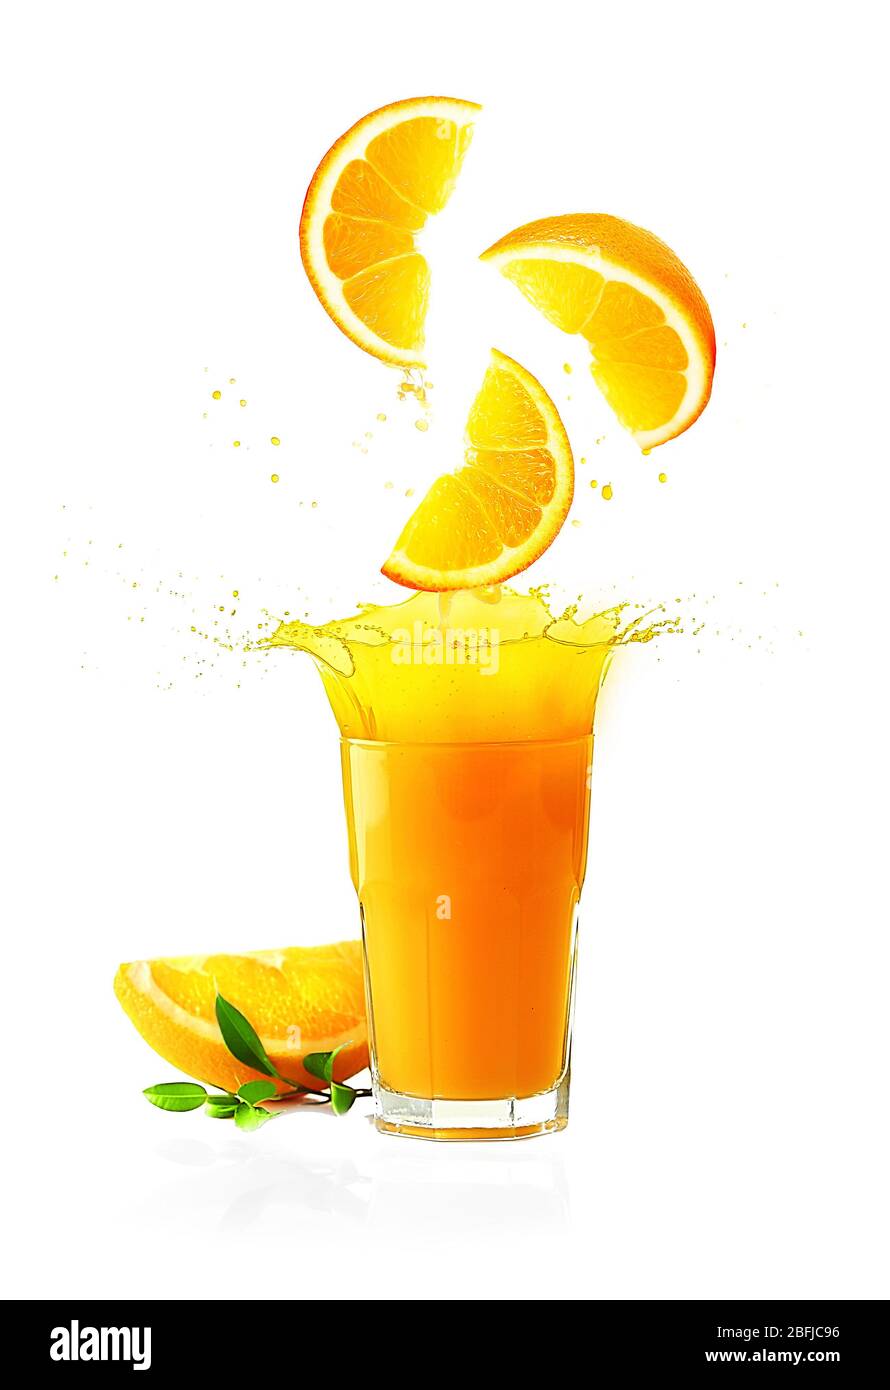 Splashing orange juice isolated on white Stock Photo